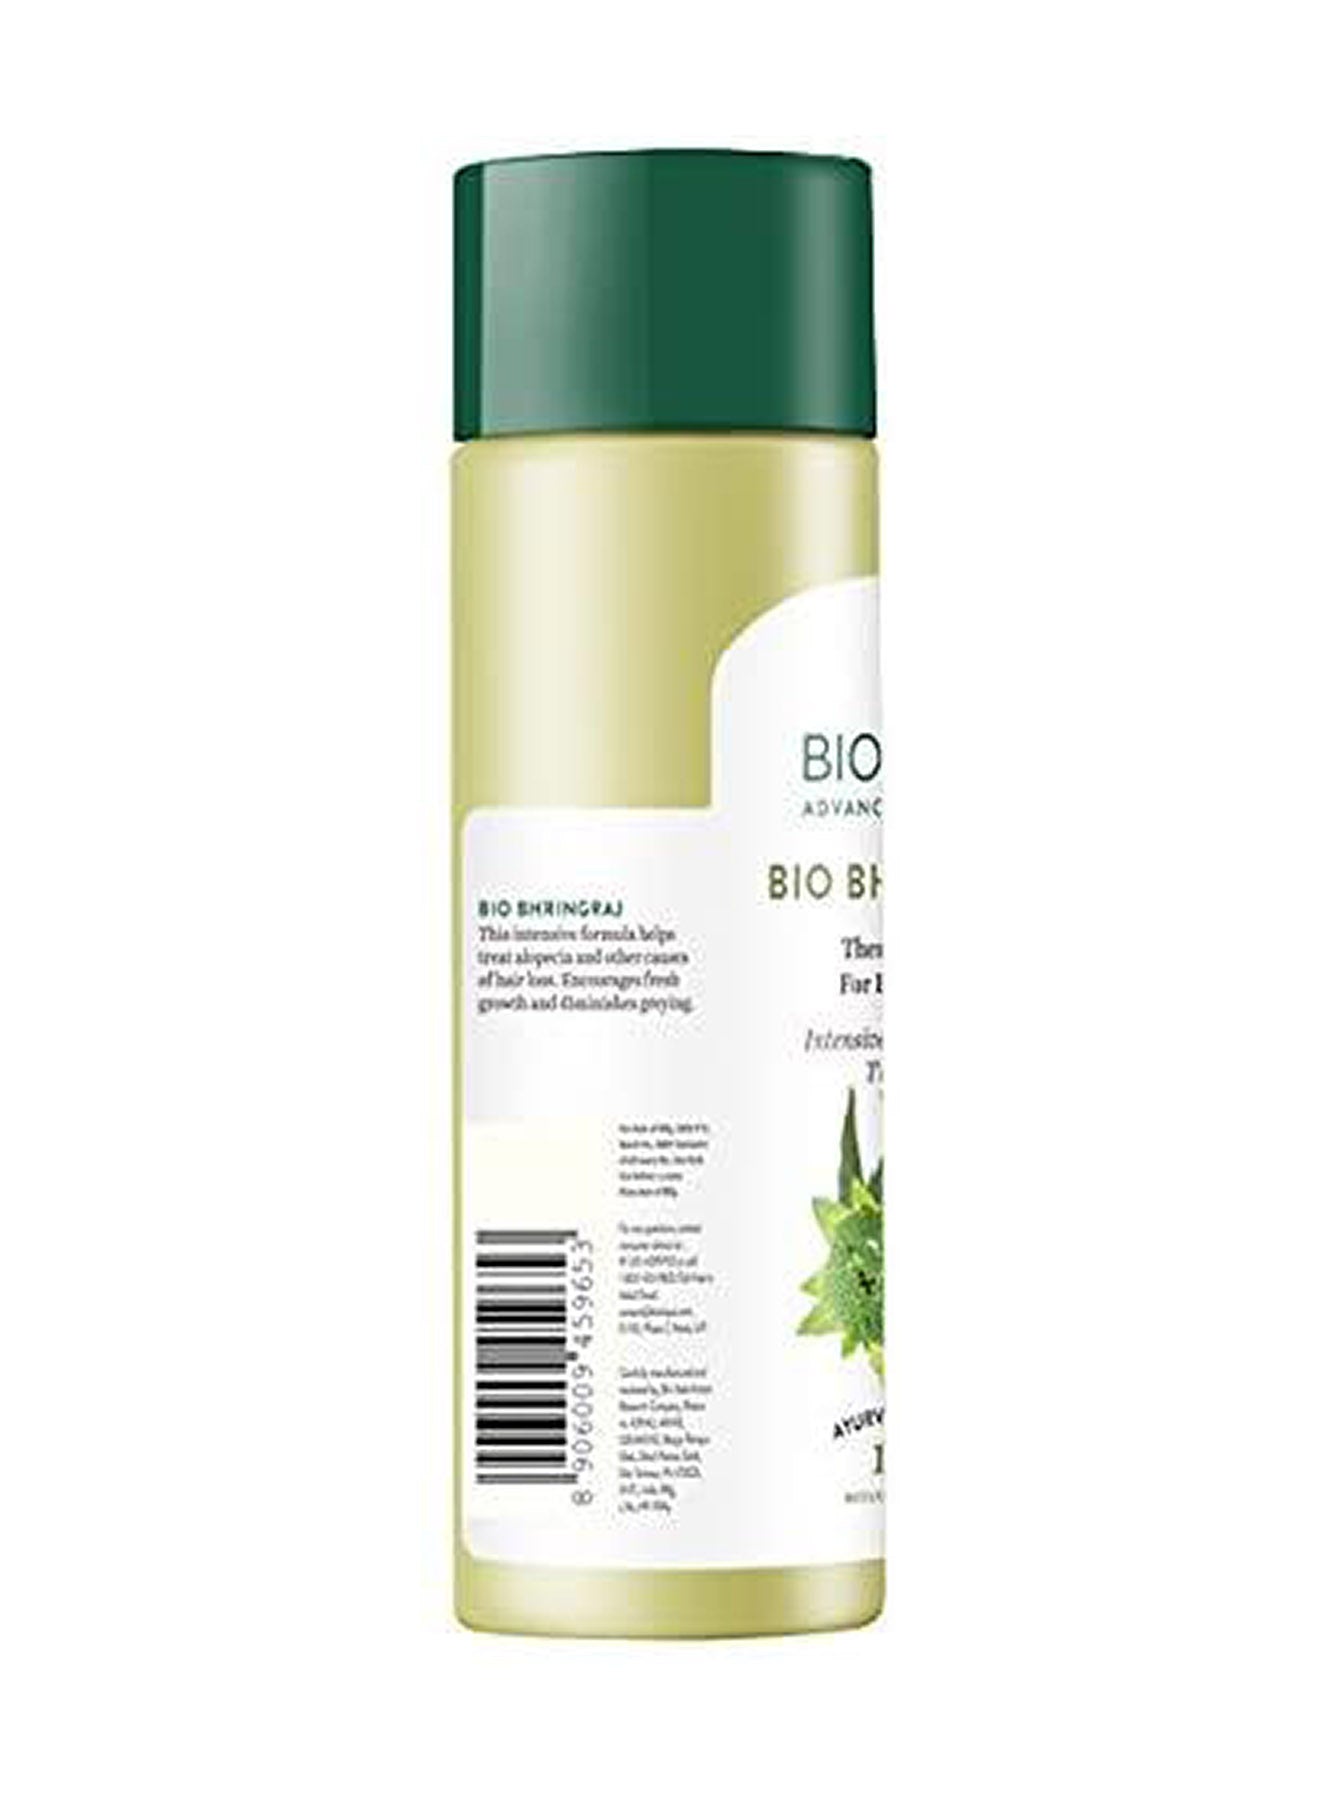 Biotique Botanicals Bhringraj Hair Oil 120ml Value Pack of 3 